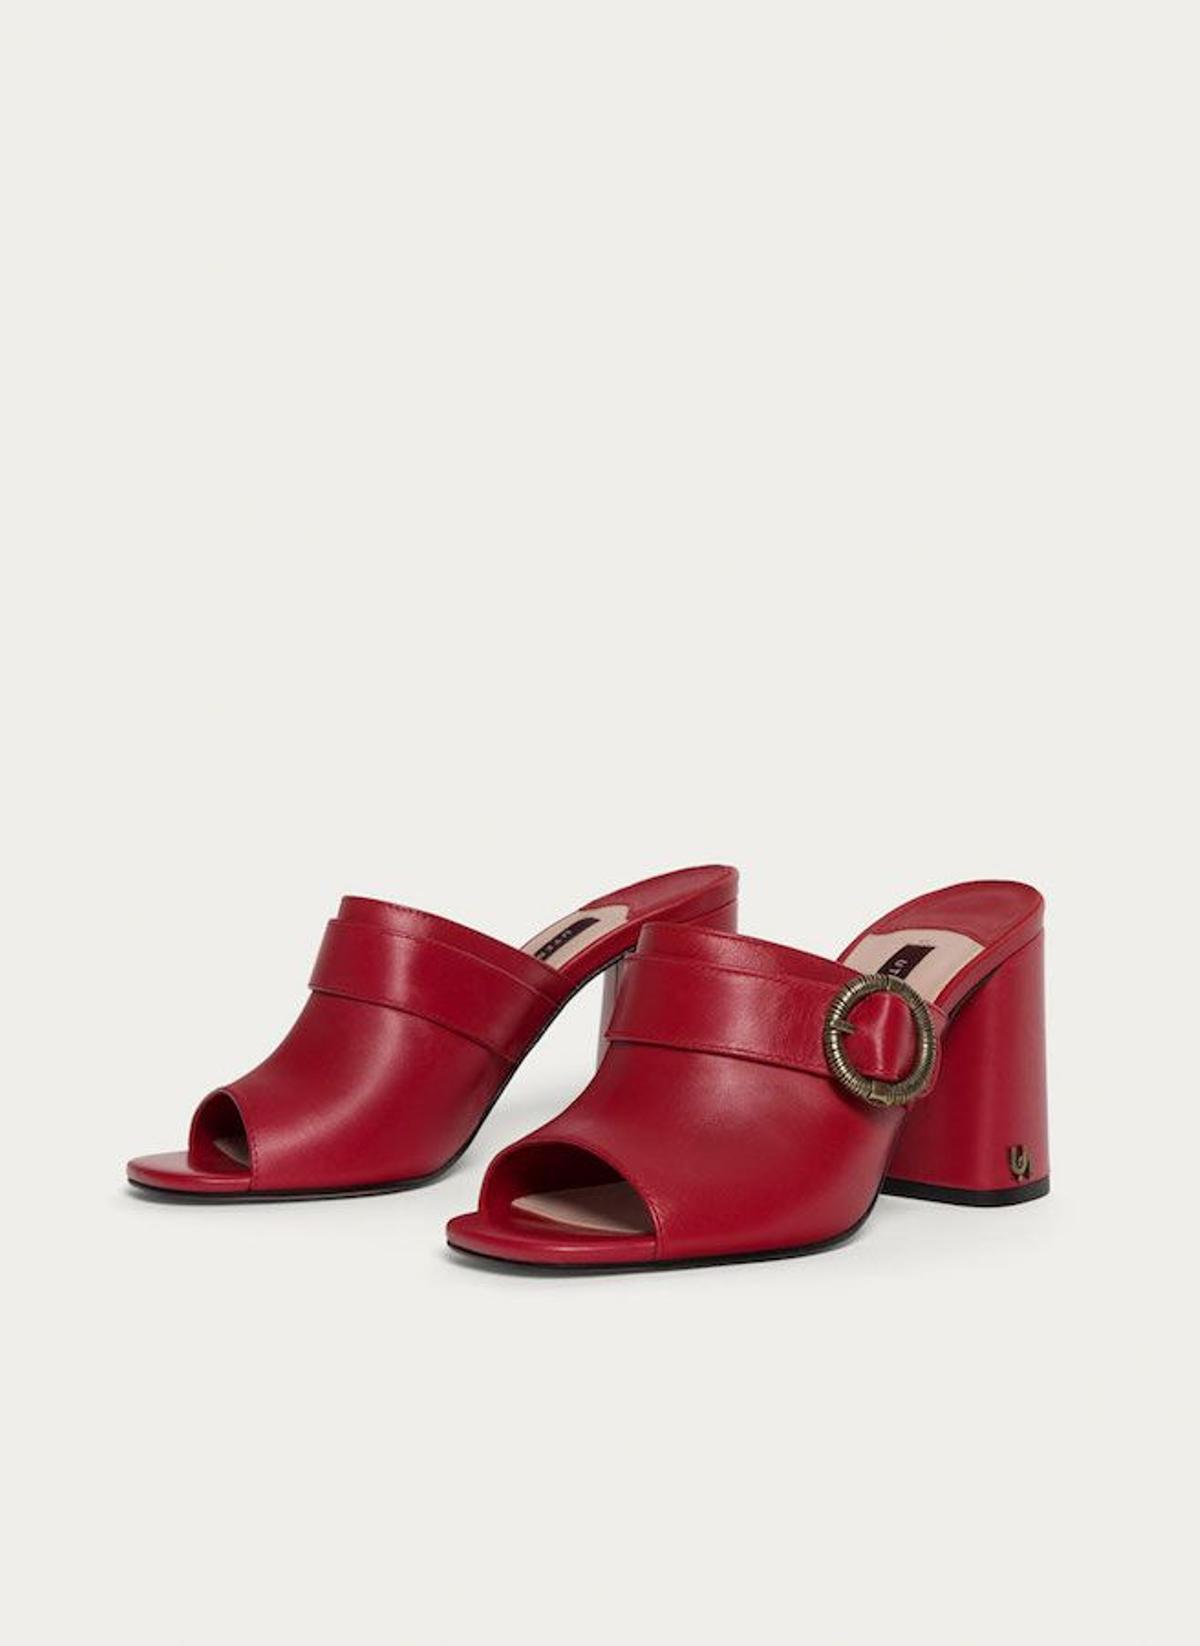 Zapatos rojos: las mules